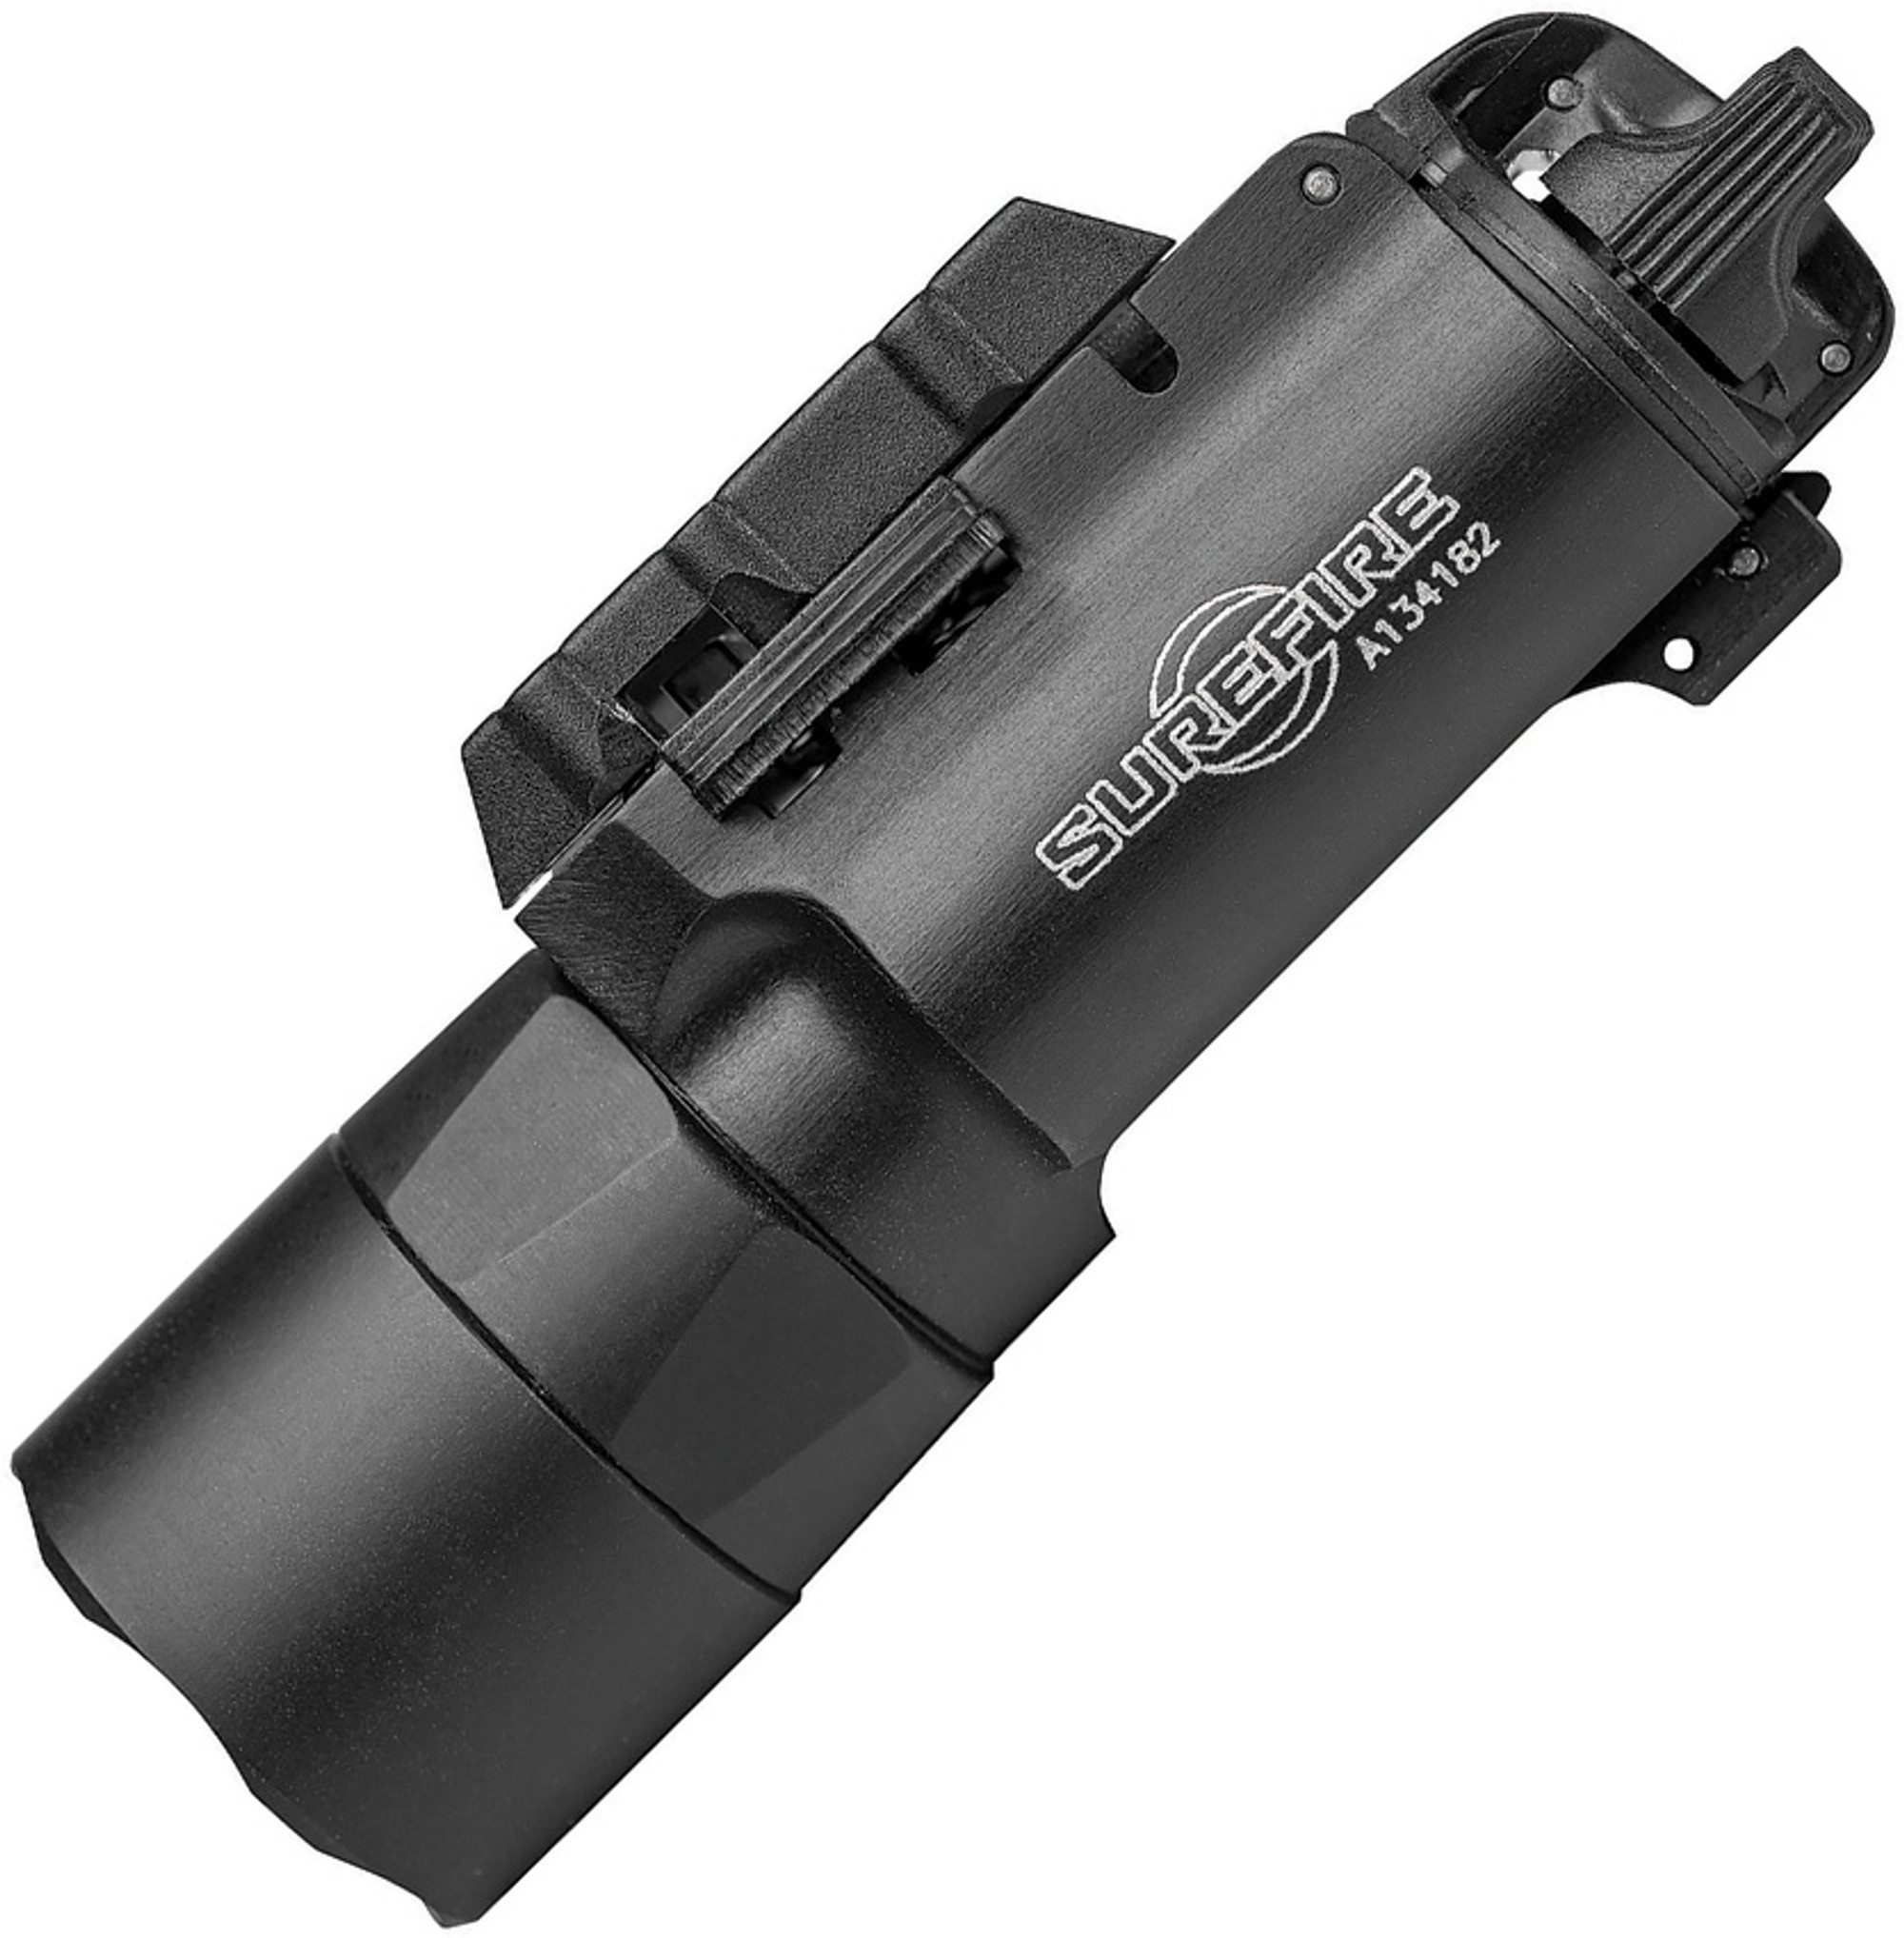 X300 Ultra LED Handgun Light